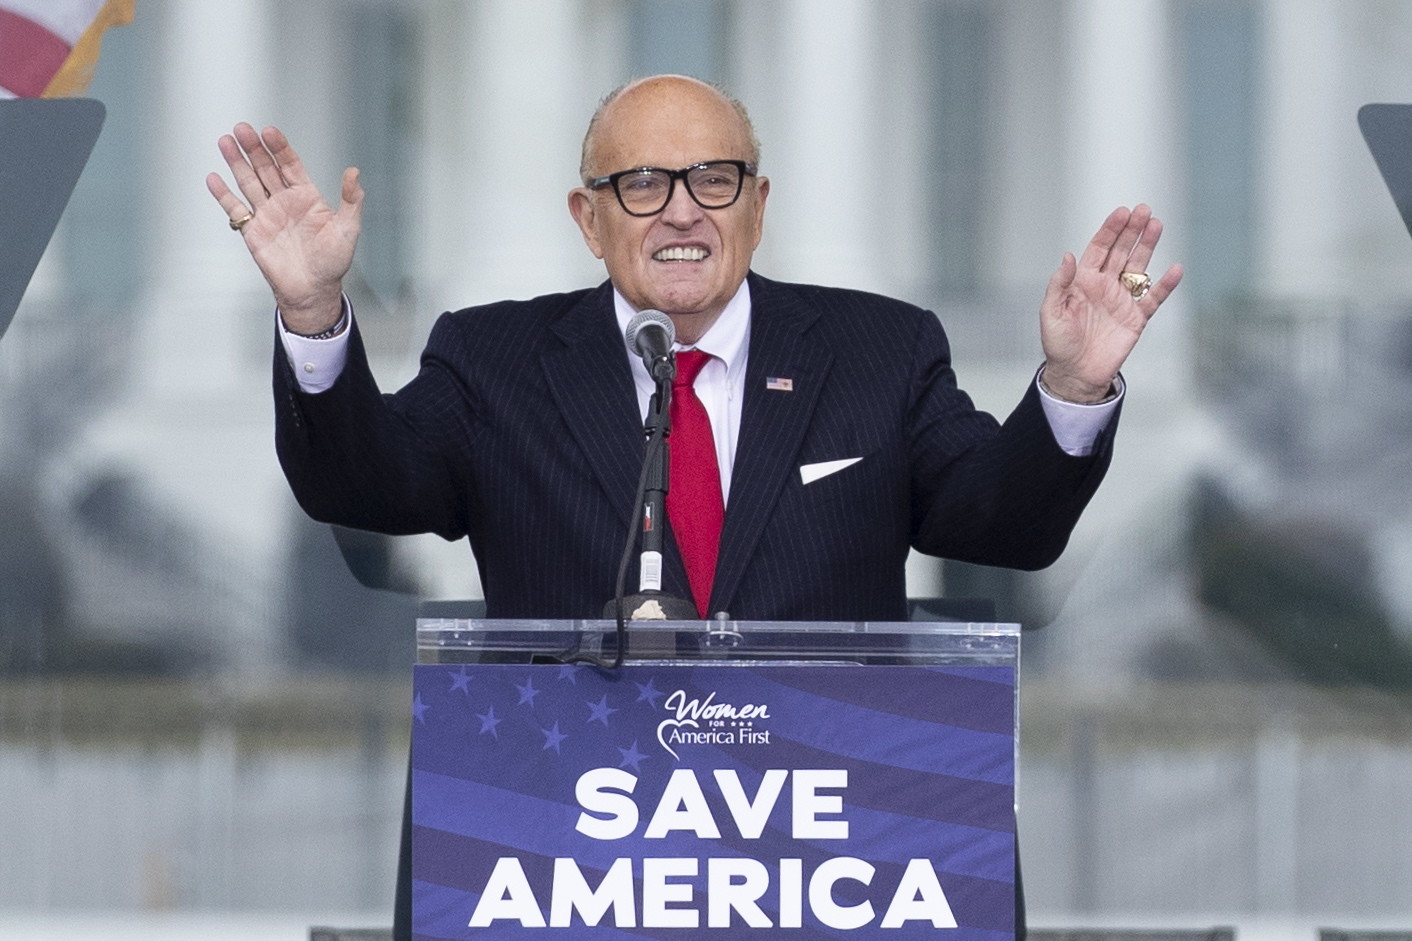 YouTube l-a restricționat pe Giuliani, avocatul lui Trump, pentru ”dezinformări electorale”